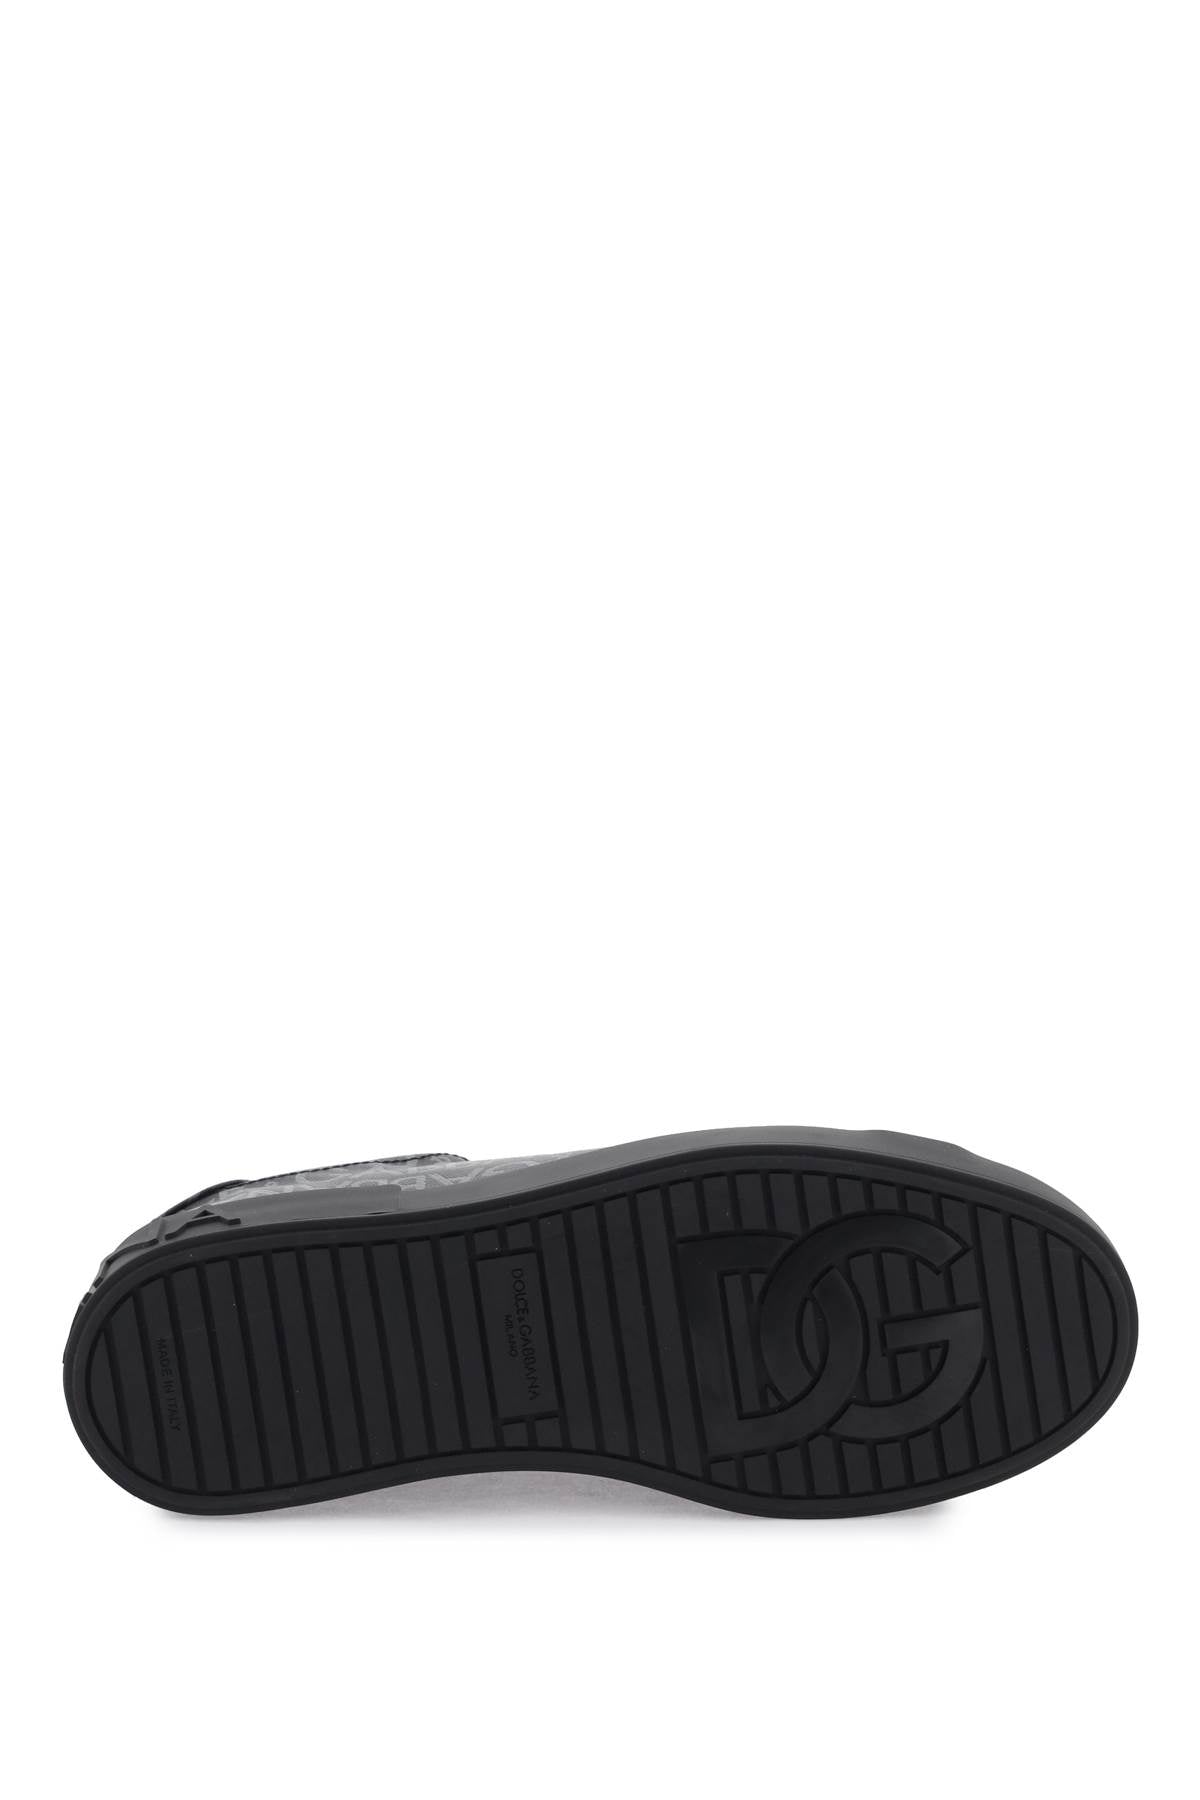 Shop Dolce & Gabbana Portofino Jacquard Sneakers In Black, Grey